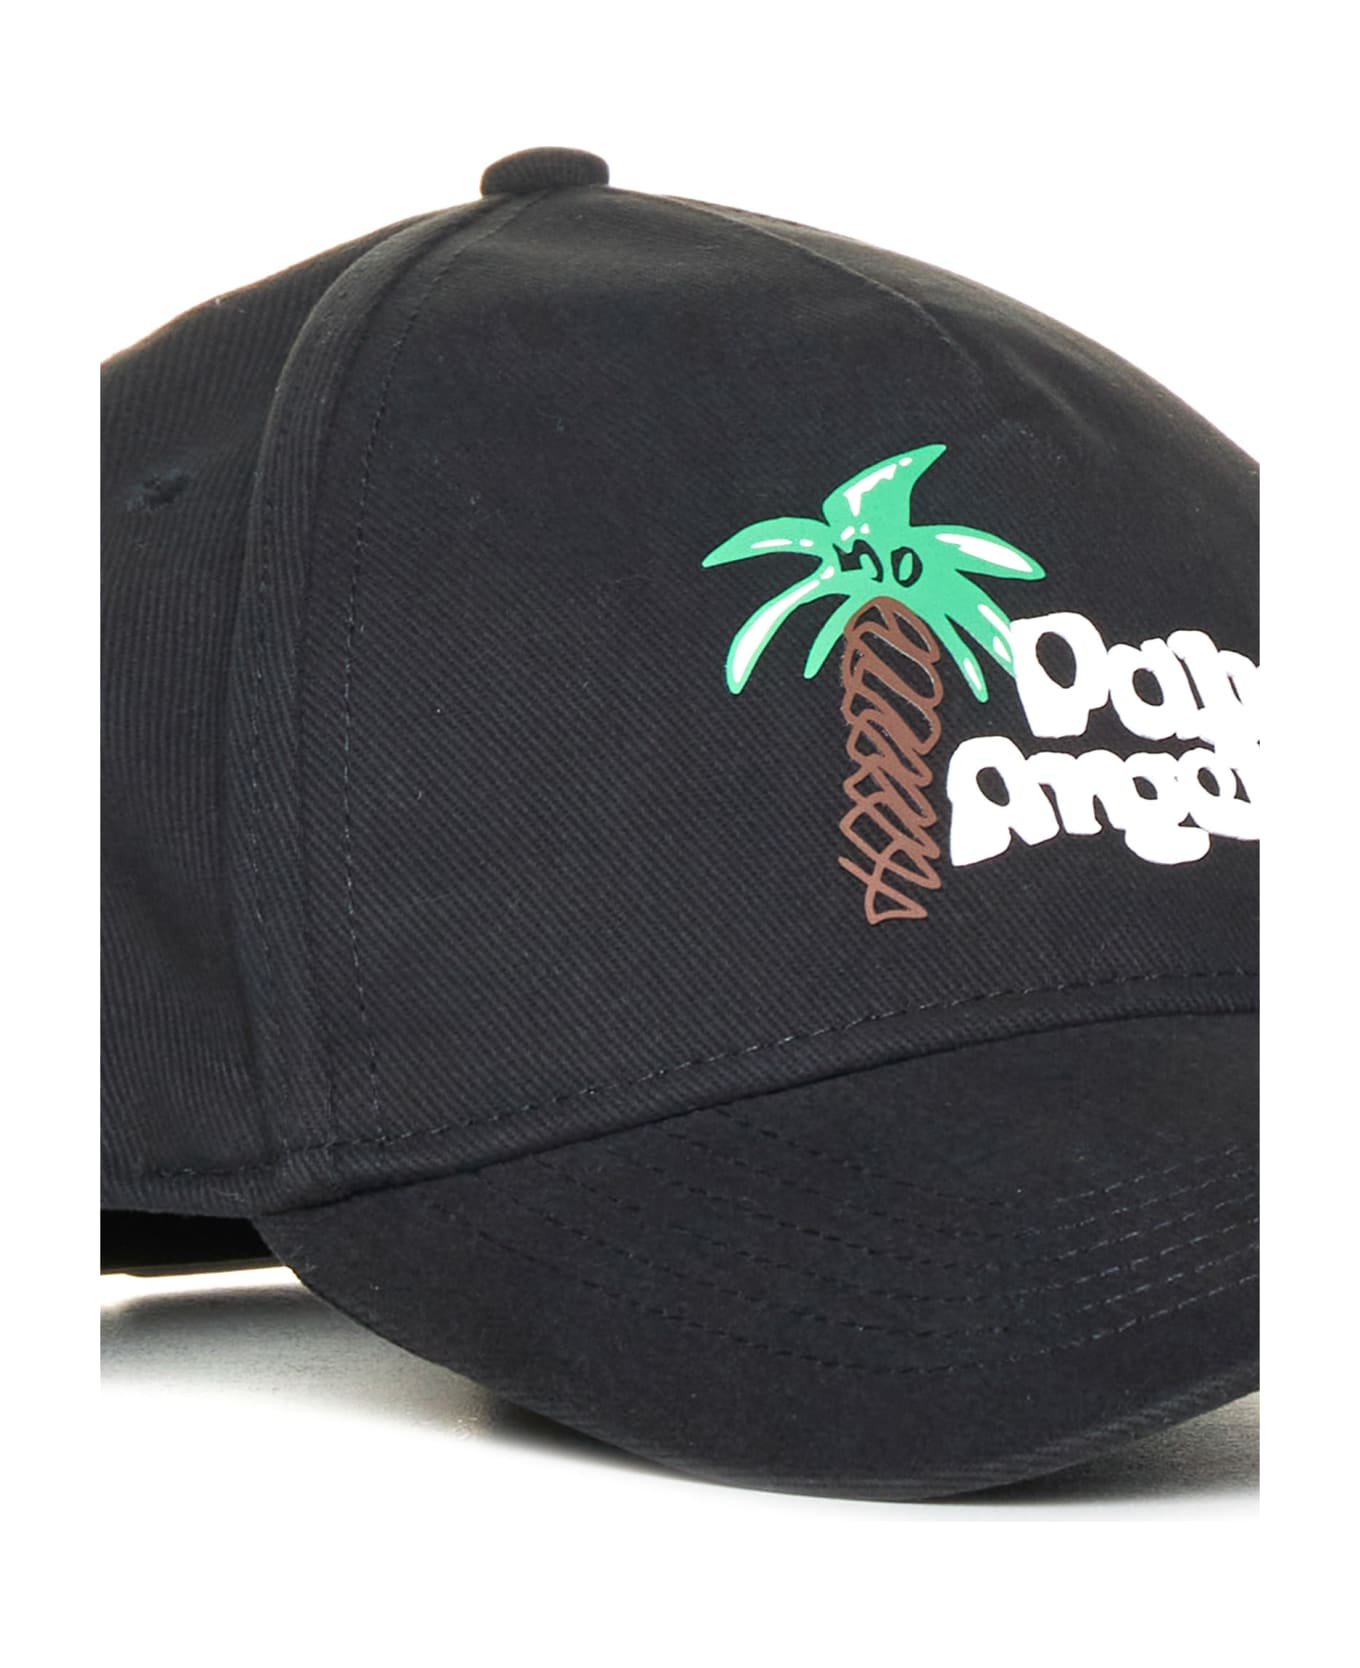 Palm Angels Sketchy Baseball Cap - Black